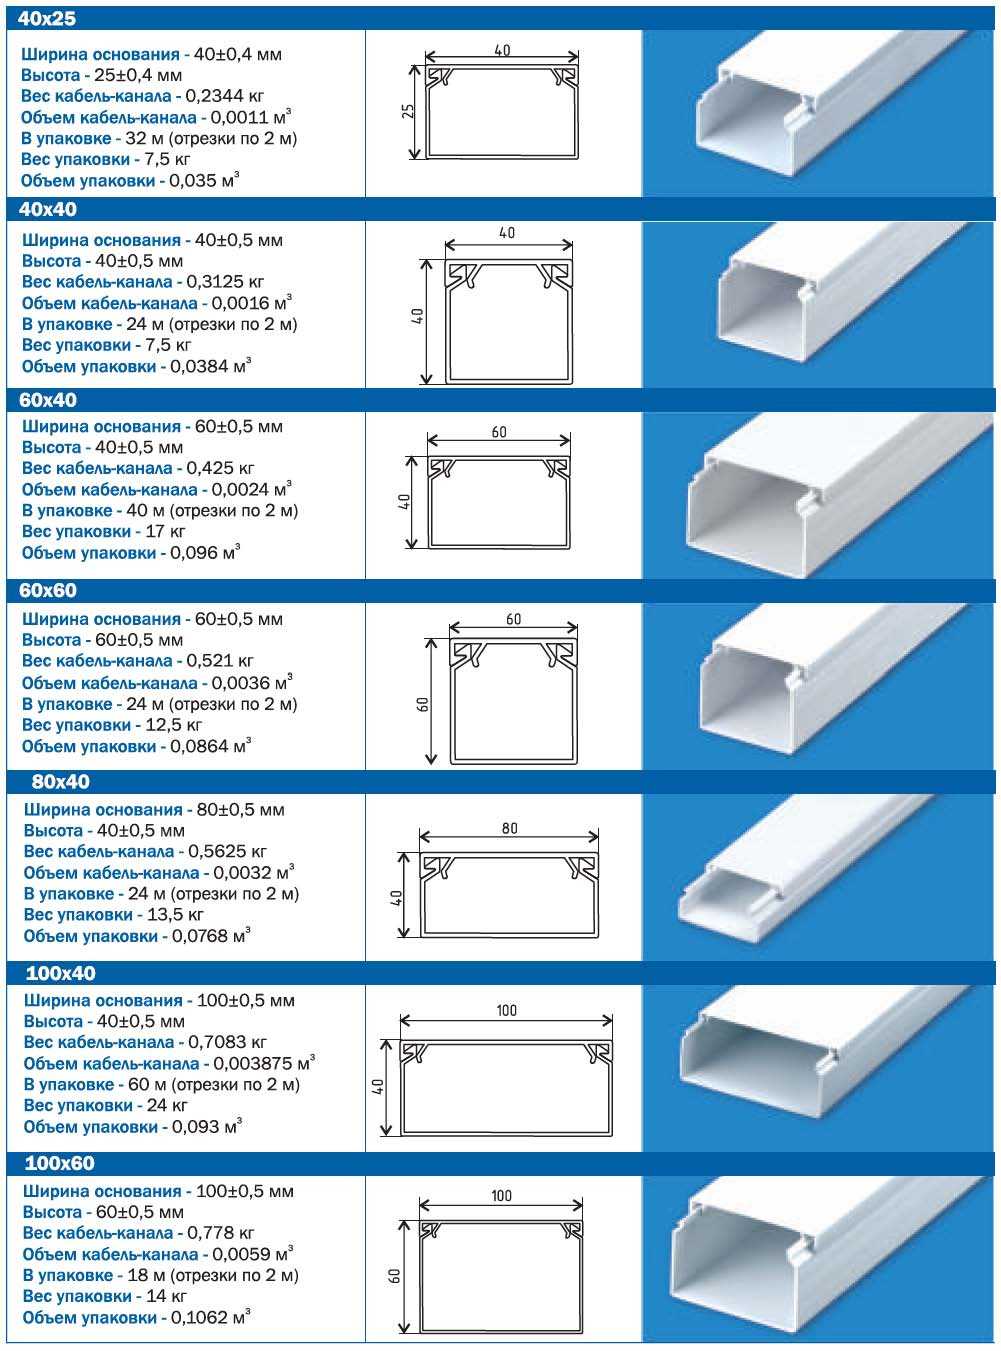 Кабель-каналы: размеры параметры изделий классификация конструкций по типу материала и конфигурации средние расценки и дополнительные комплектующие